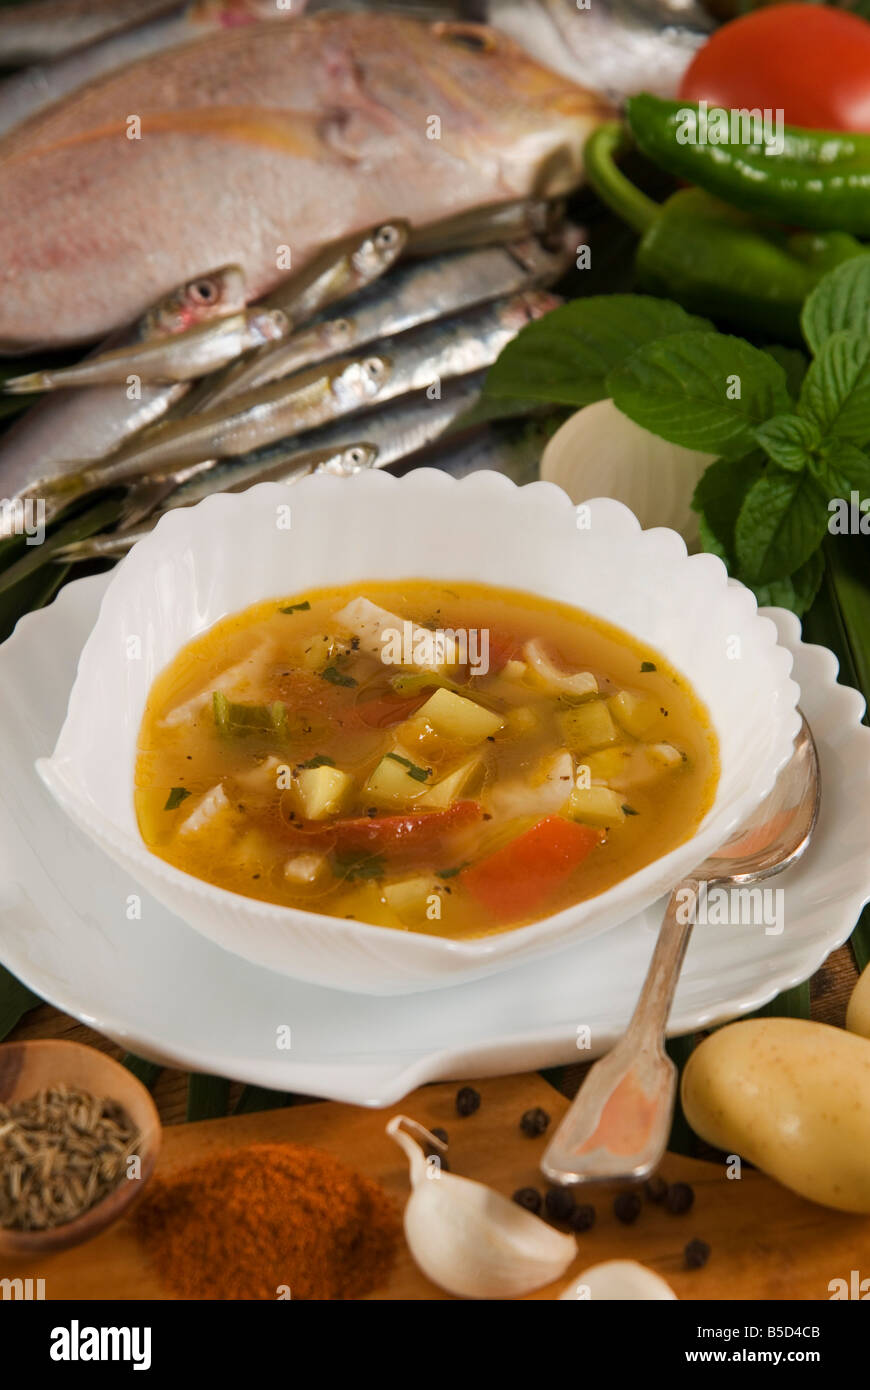 Caldo de pescado soup, de l'alimentation des îles Canaries, Espagne, Europe Banque D'Images